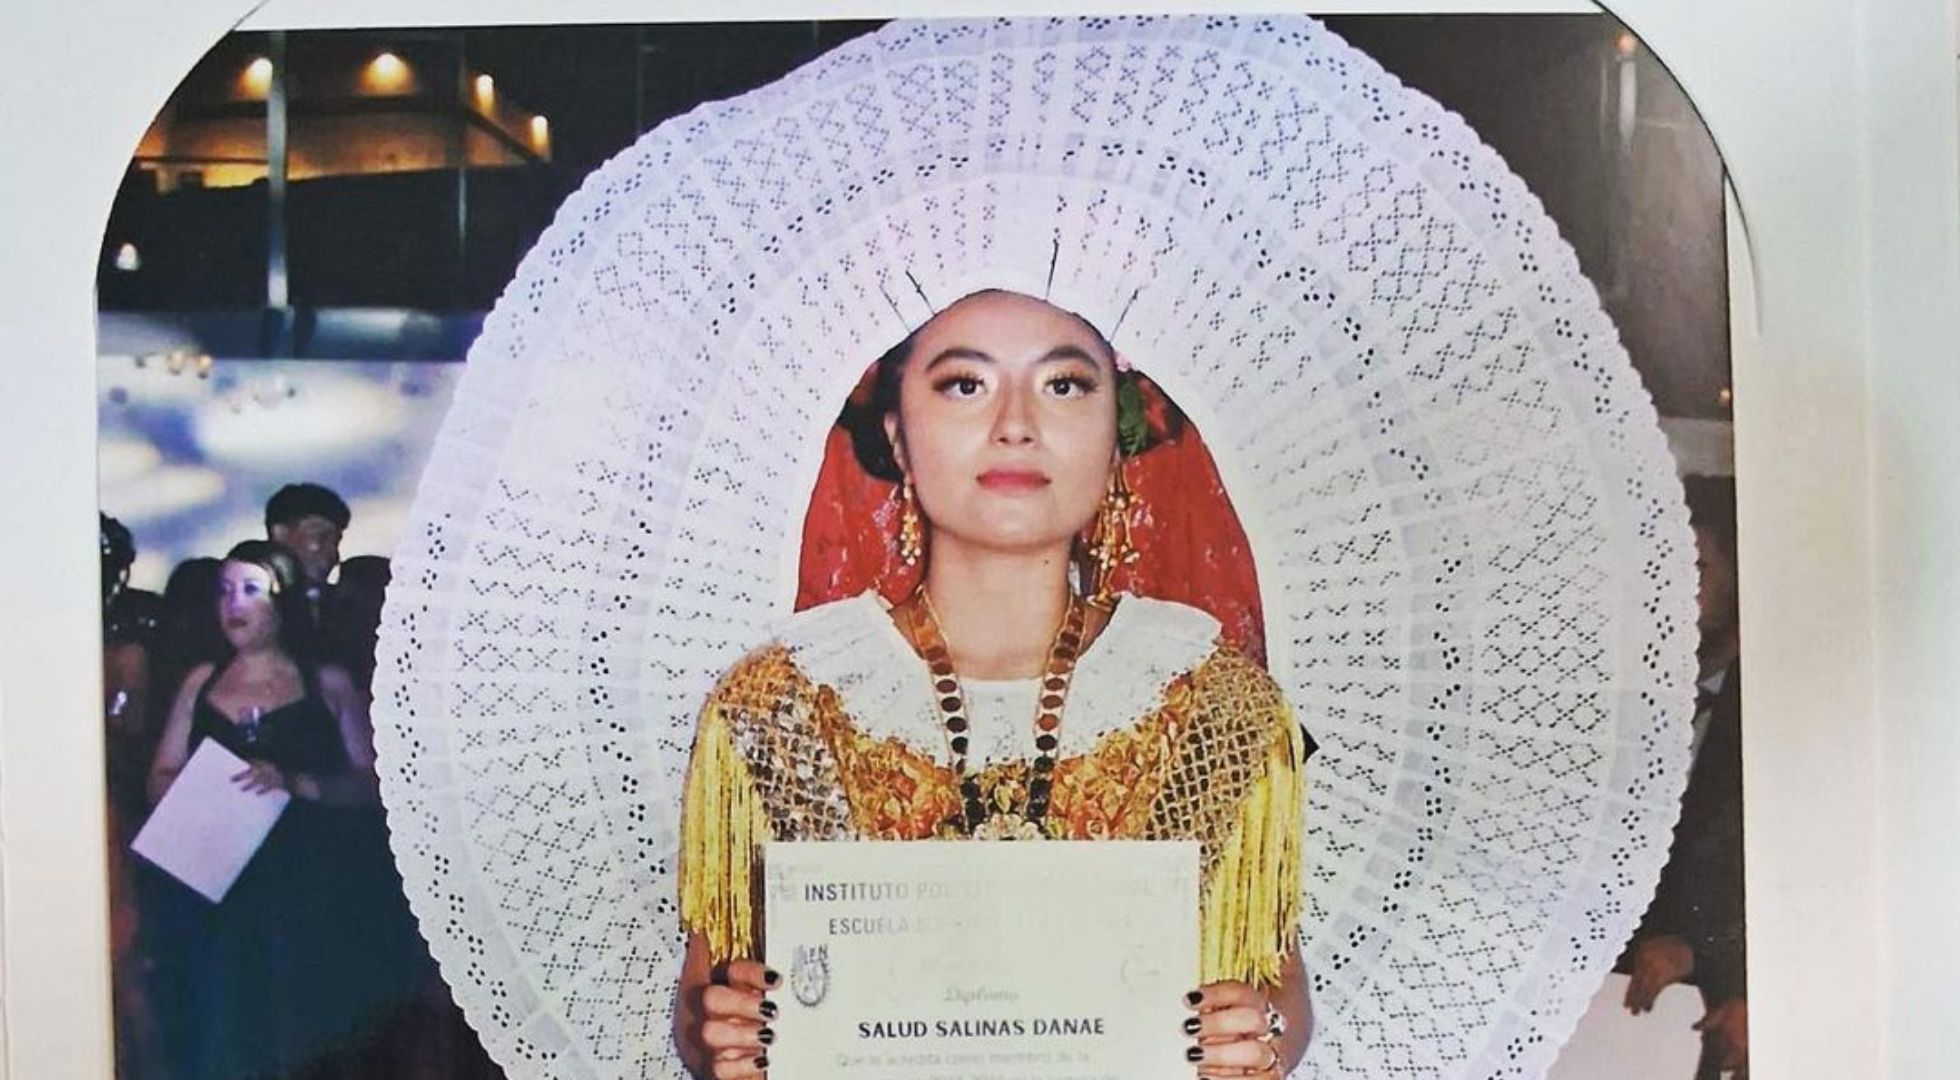 El traje de tehuana de una joven se roba el protagonismo en la graduación del IPN